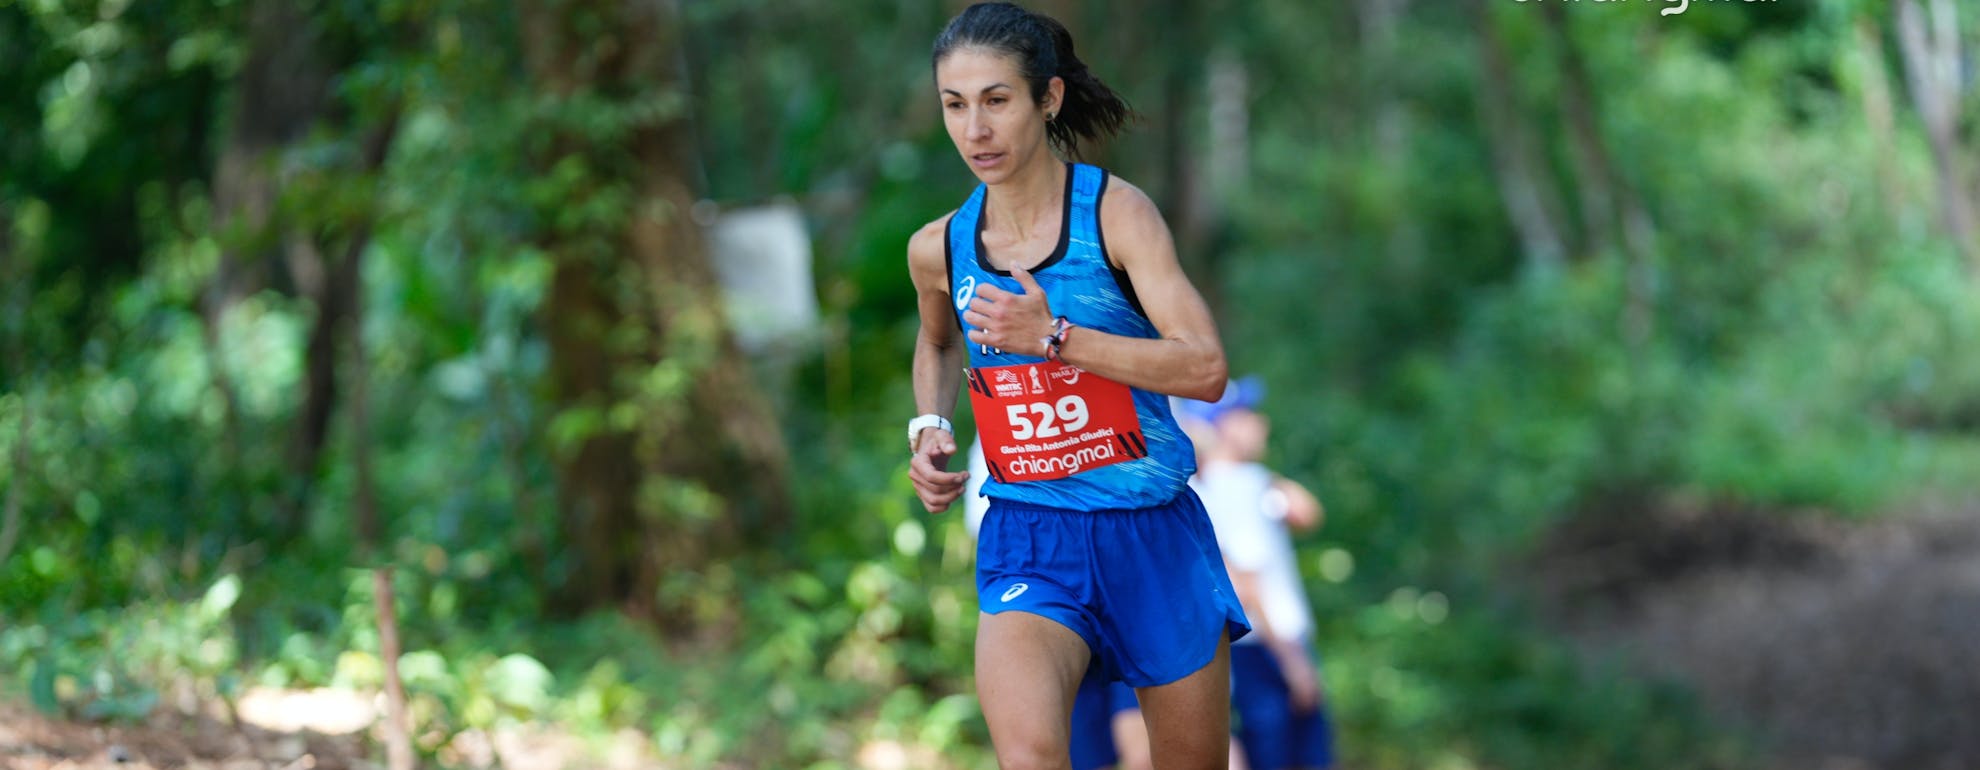 Campionati mondiali di Trail Running e corsa in montagna con Gloria Giudici